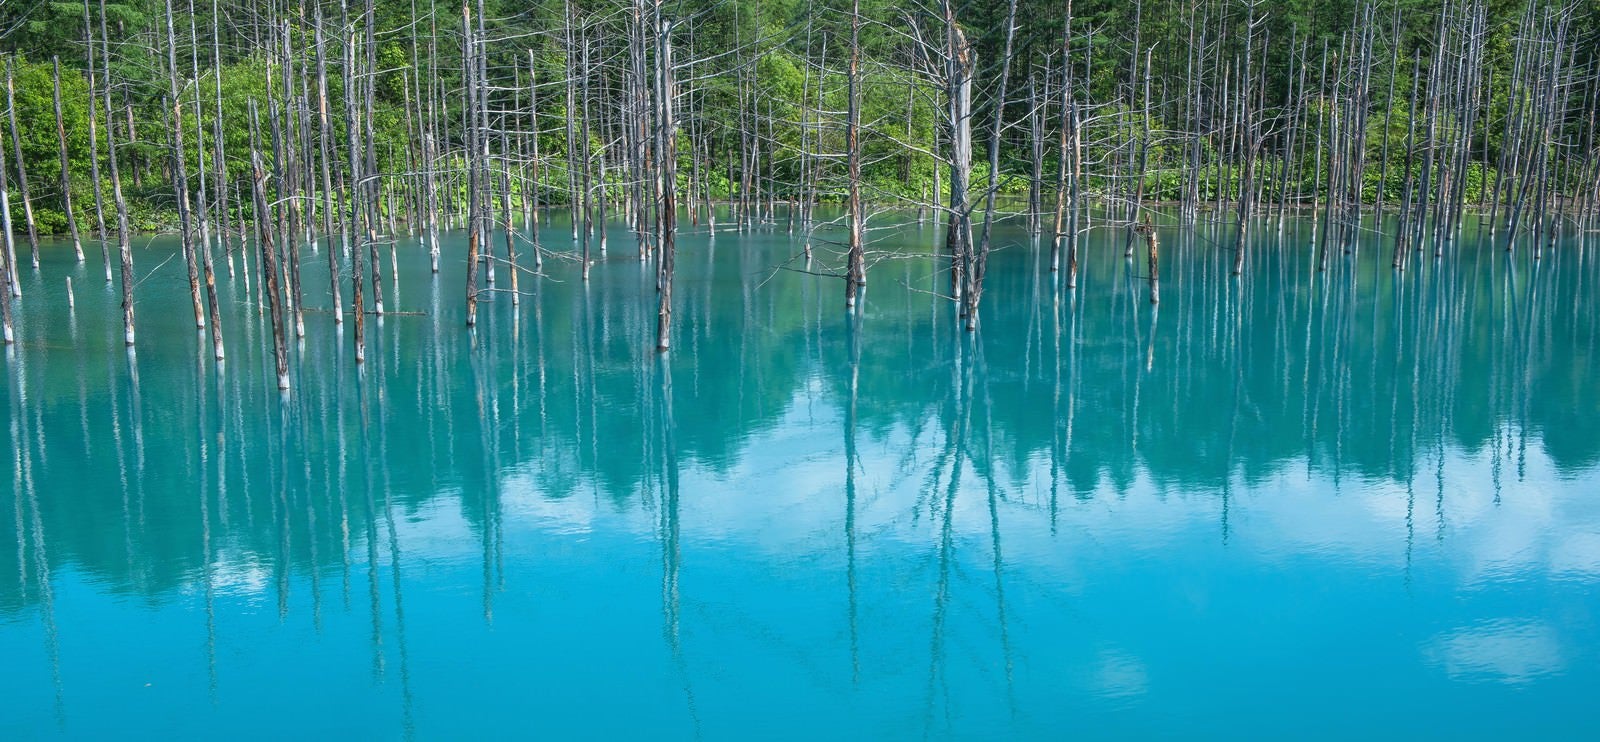 「青い池」の写真